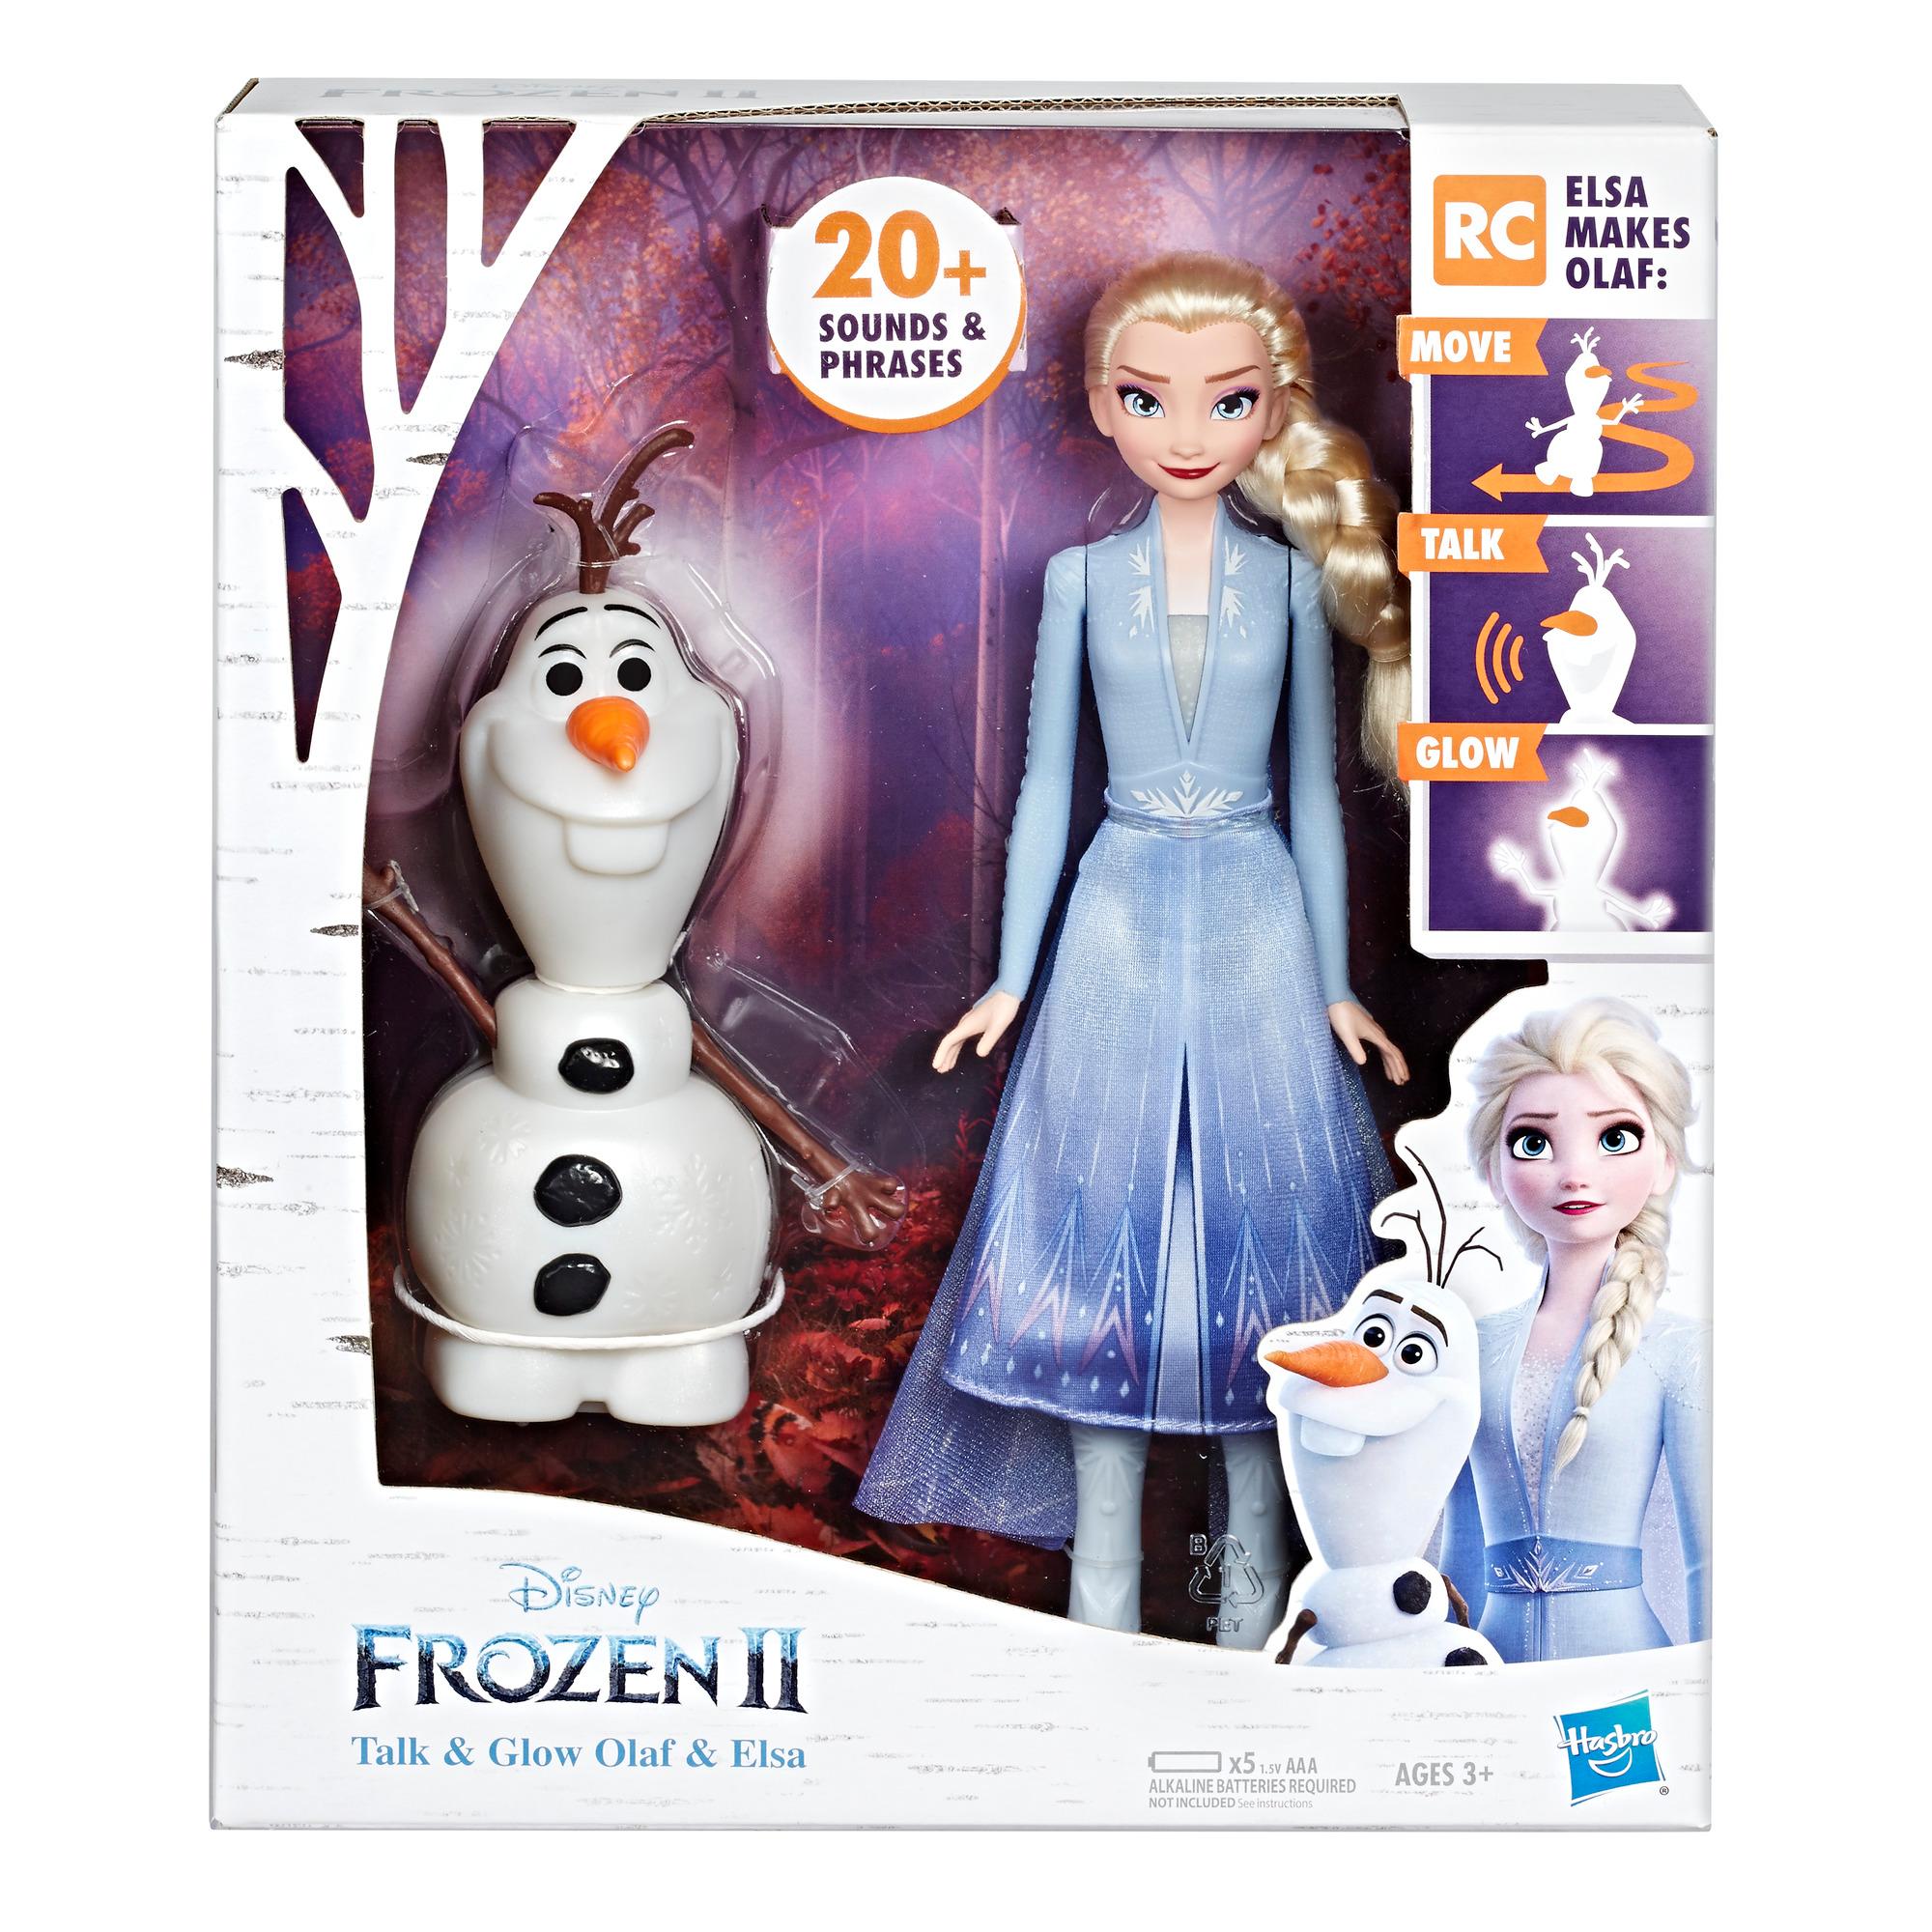 Auswahl Hasbro Disney Frozen Figuren Charakter Olaf oder Anna mit Accessoires 